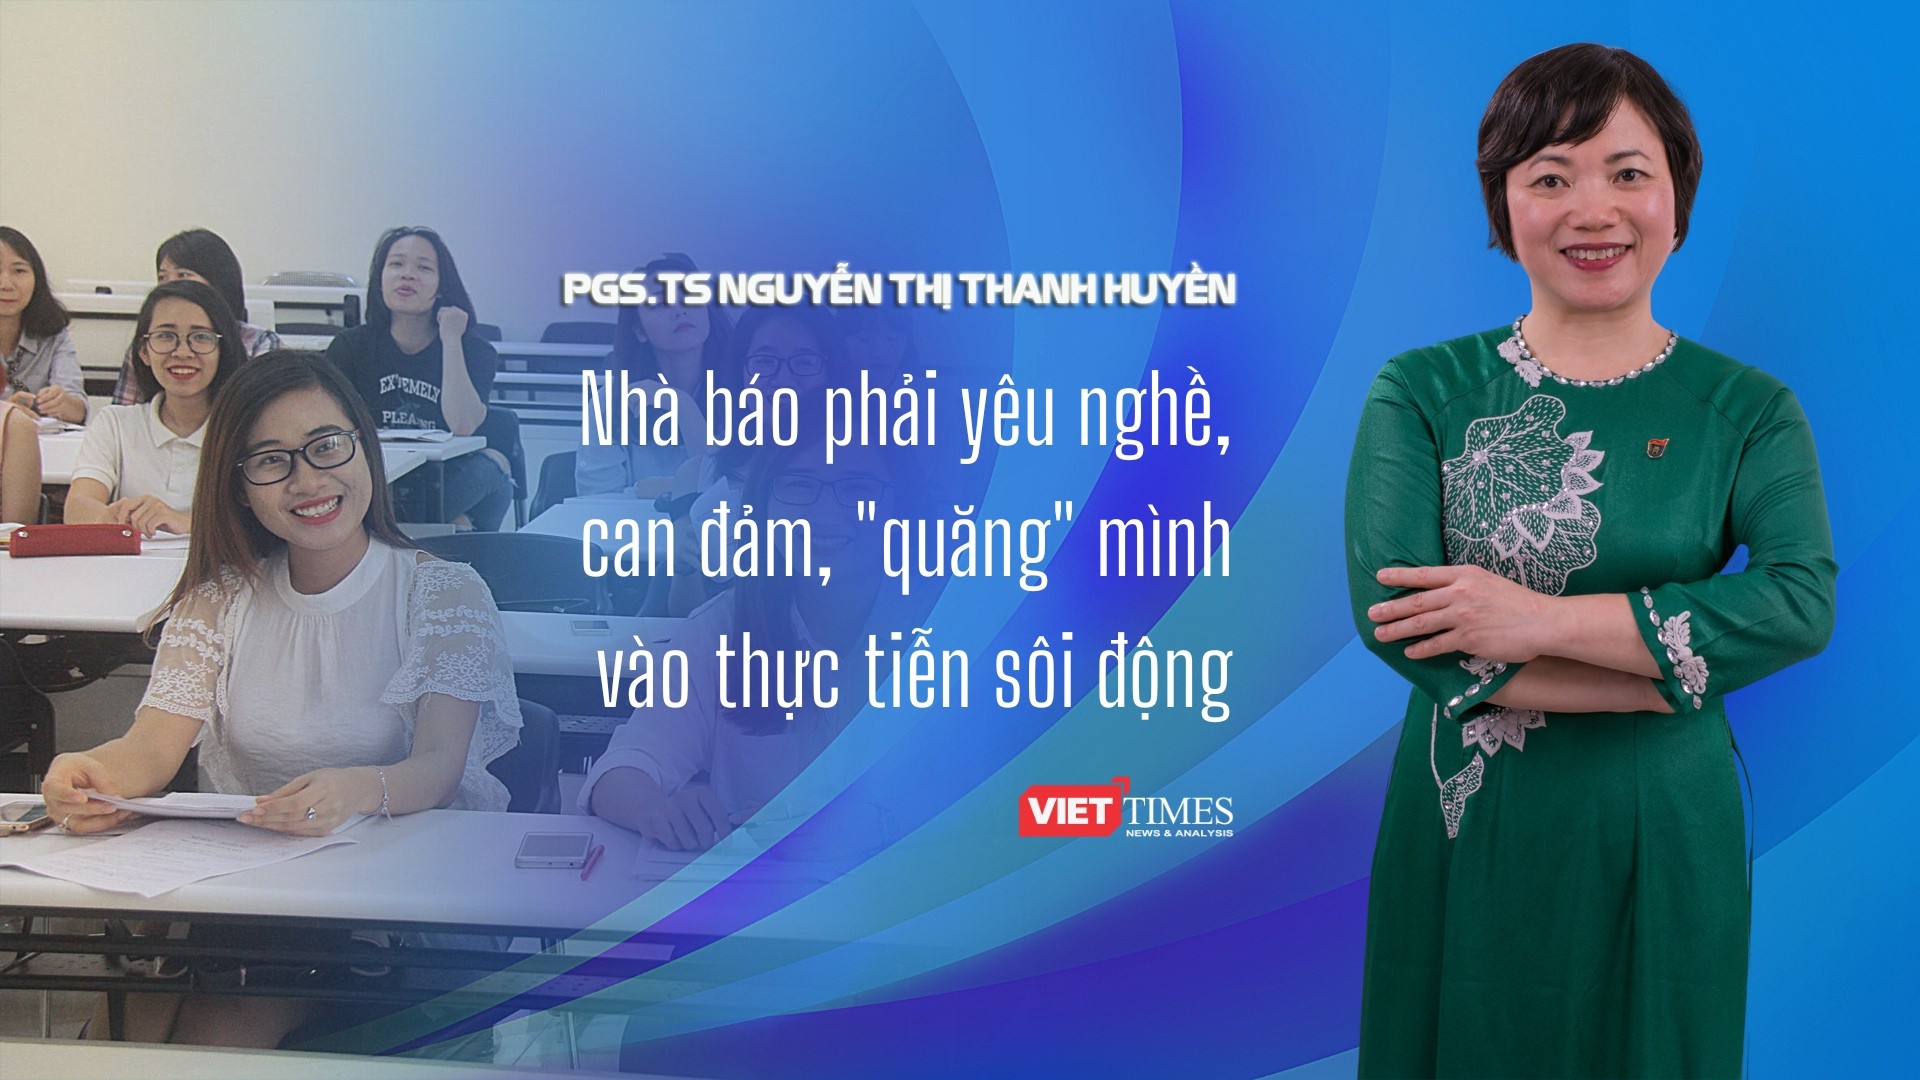 PGS.TS Nguyễn Thanh Huyền: Nhà báo phải yêu nghề, can đảm, "quăng" mình vào thực tiễn sôi động